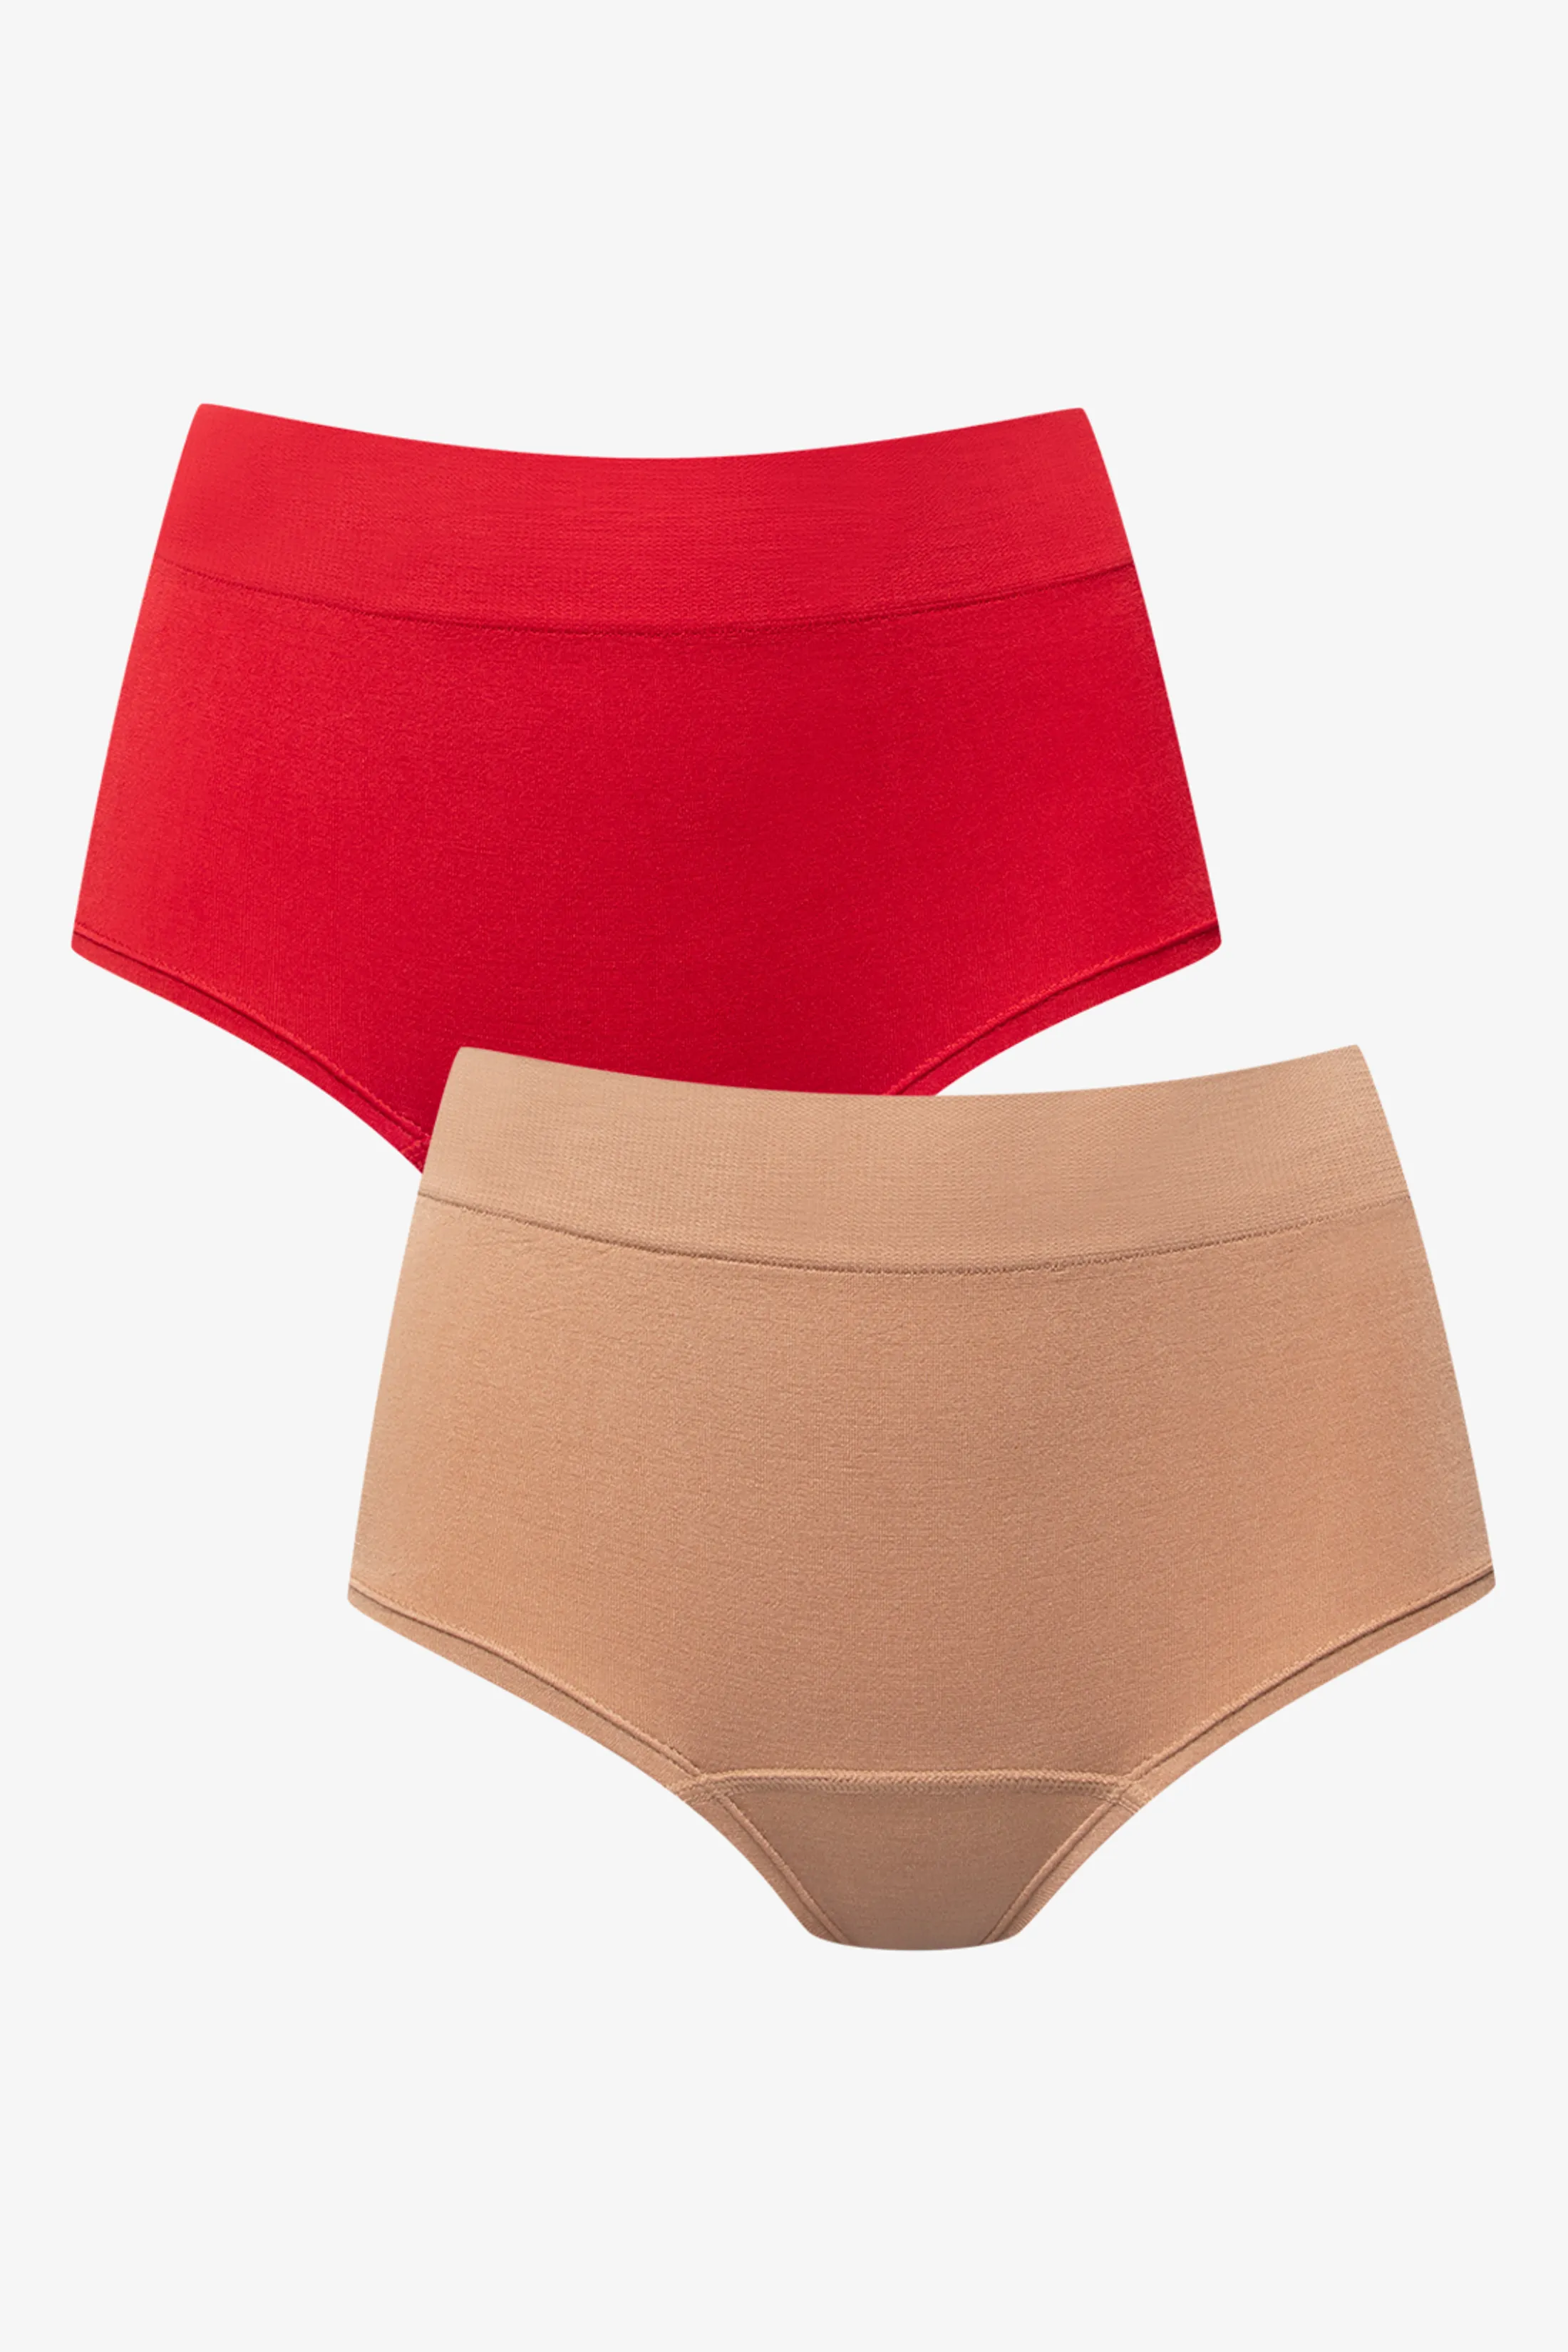 Women's one-piece casual underwear (red)